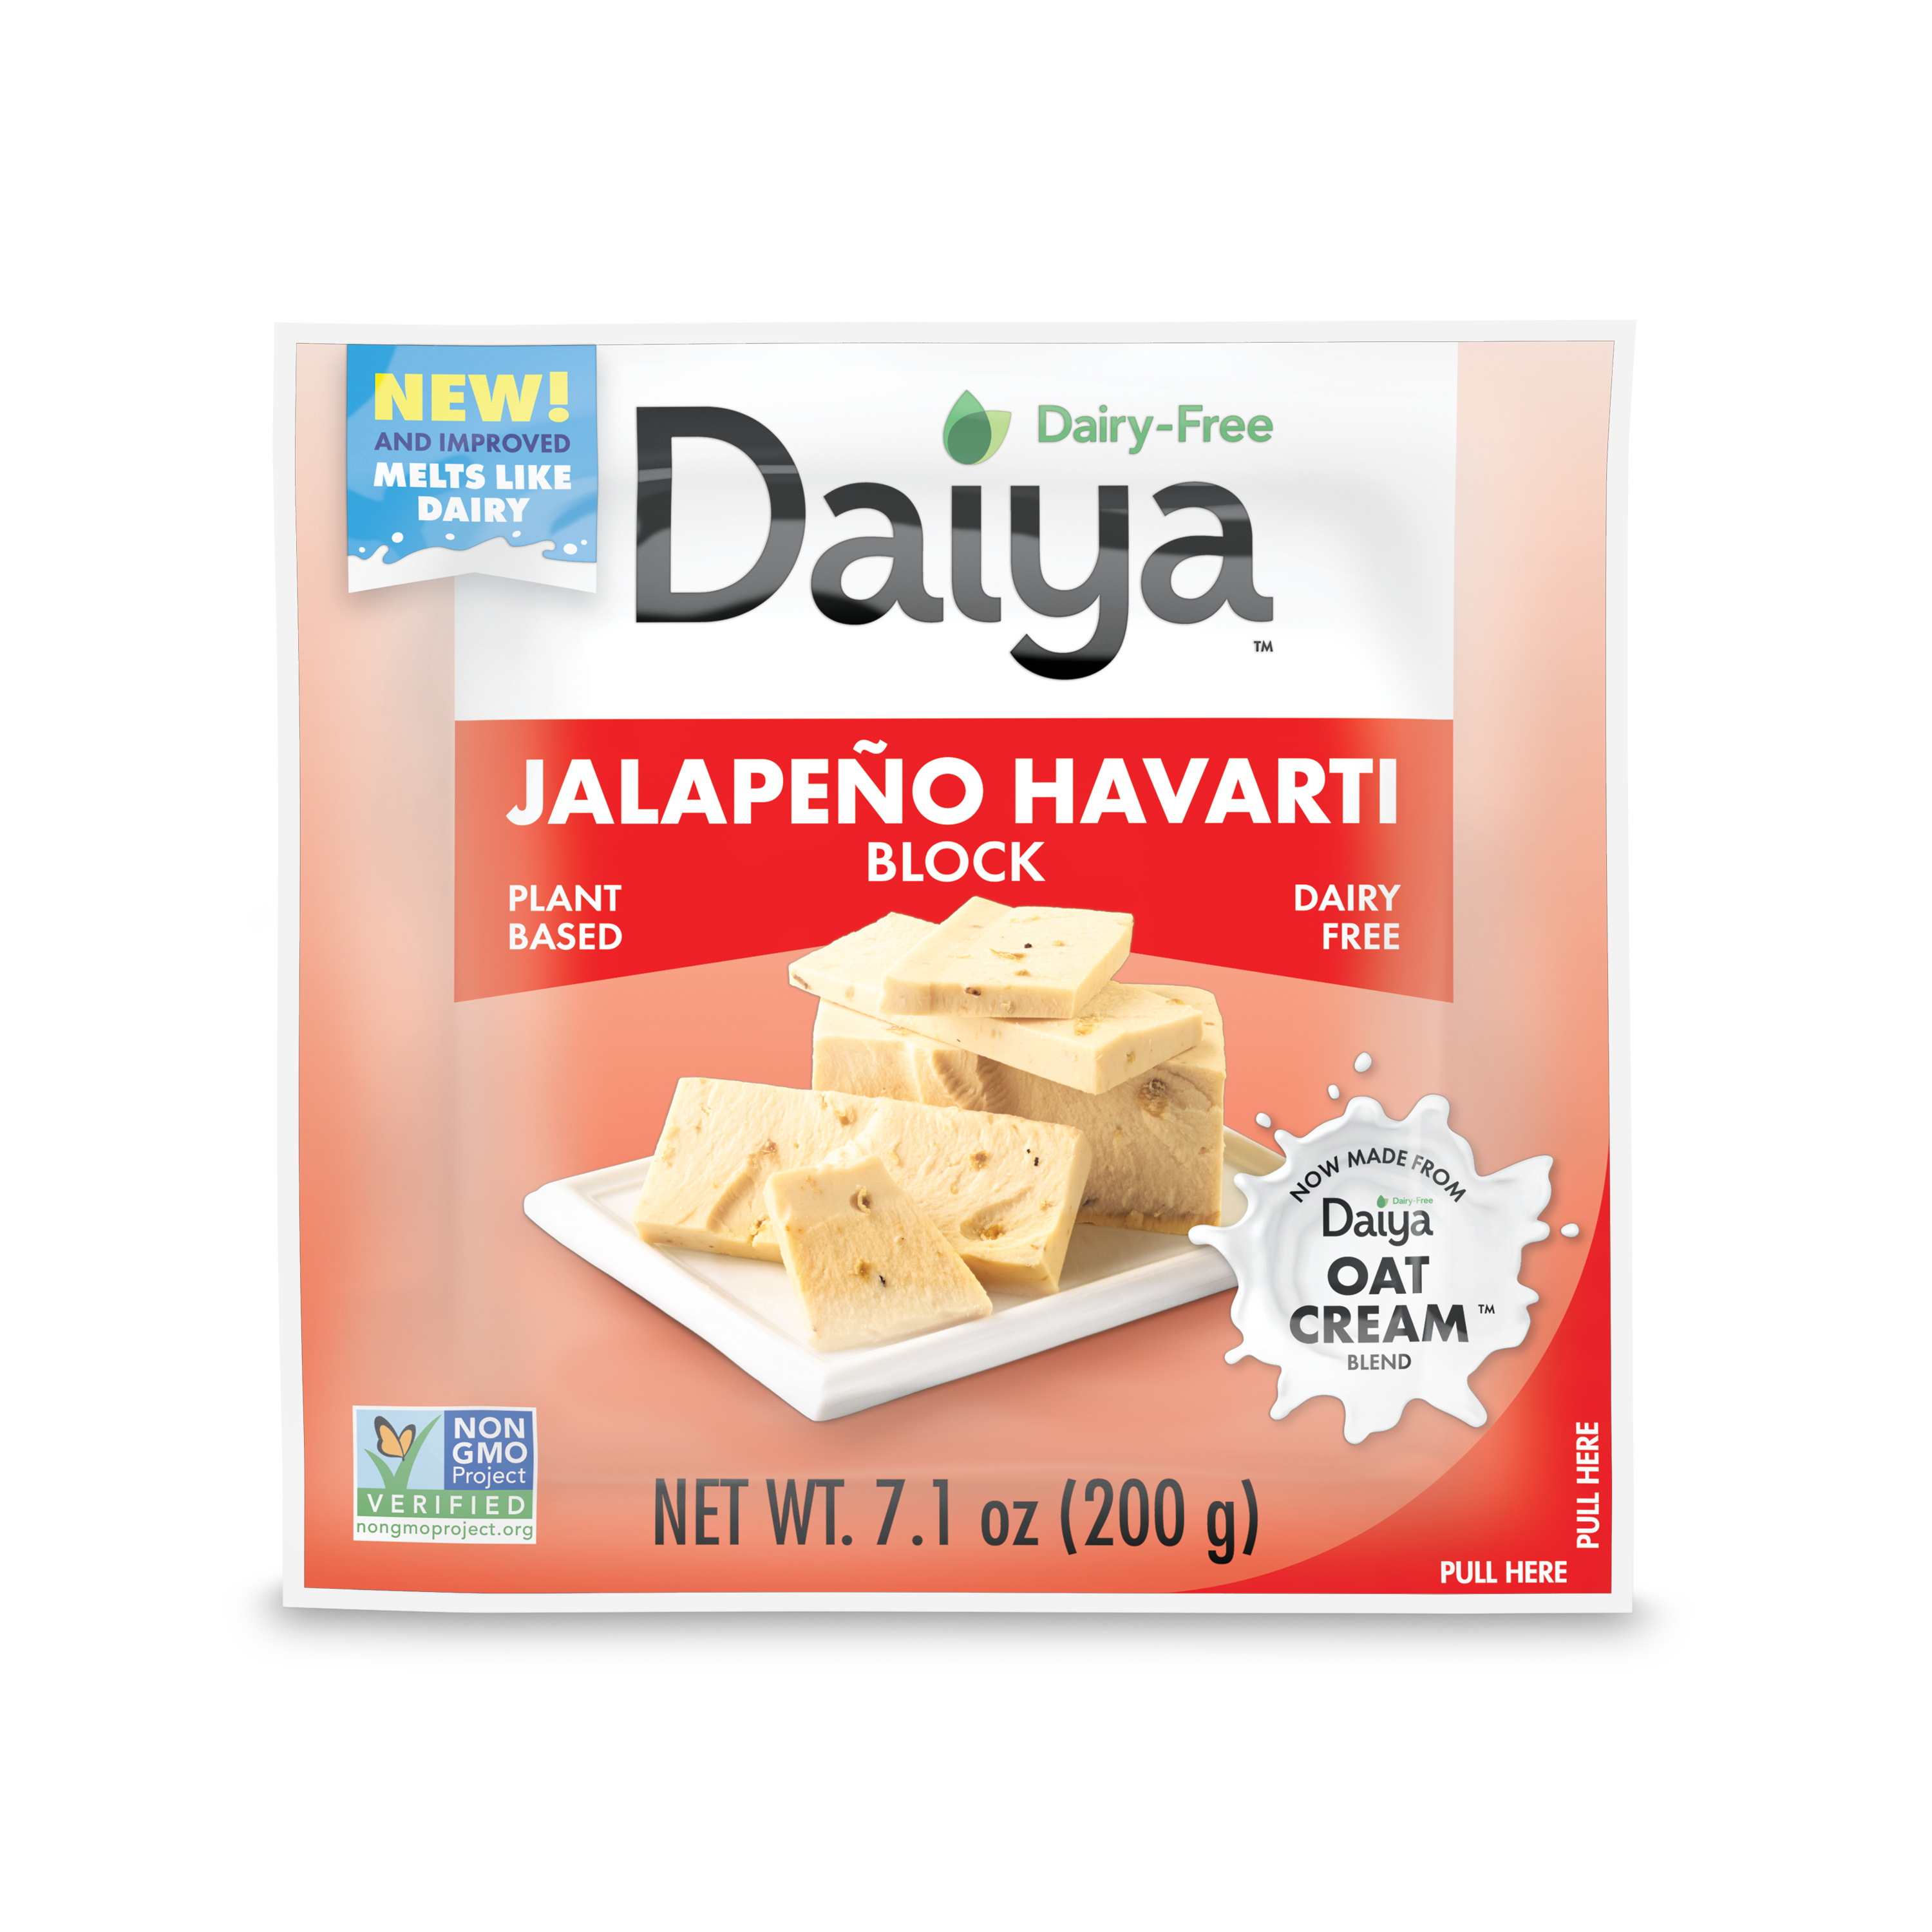 Dairy-Free Jalapeño Havarti Block